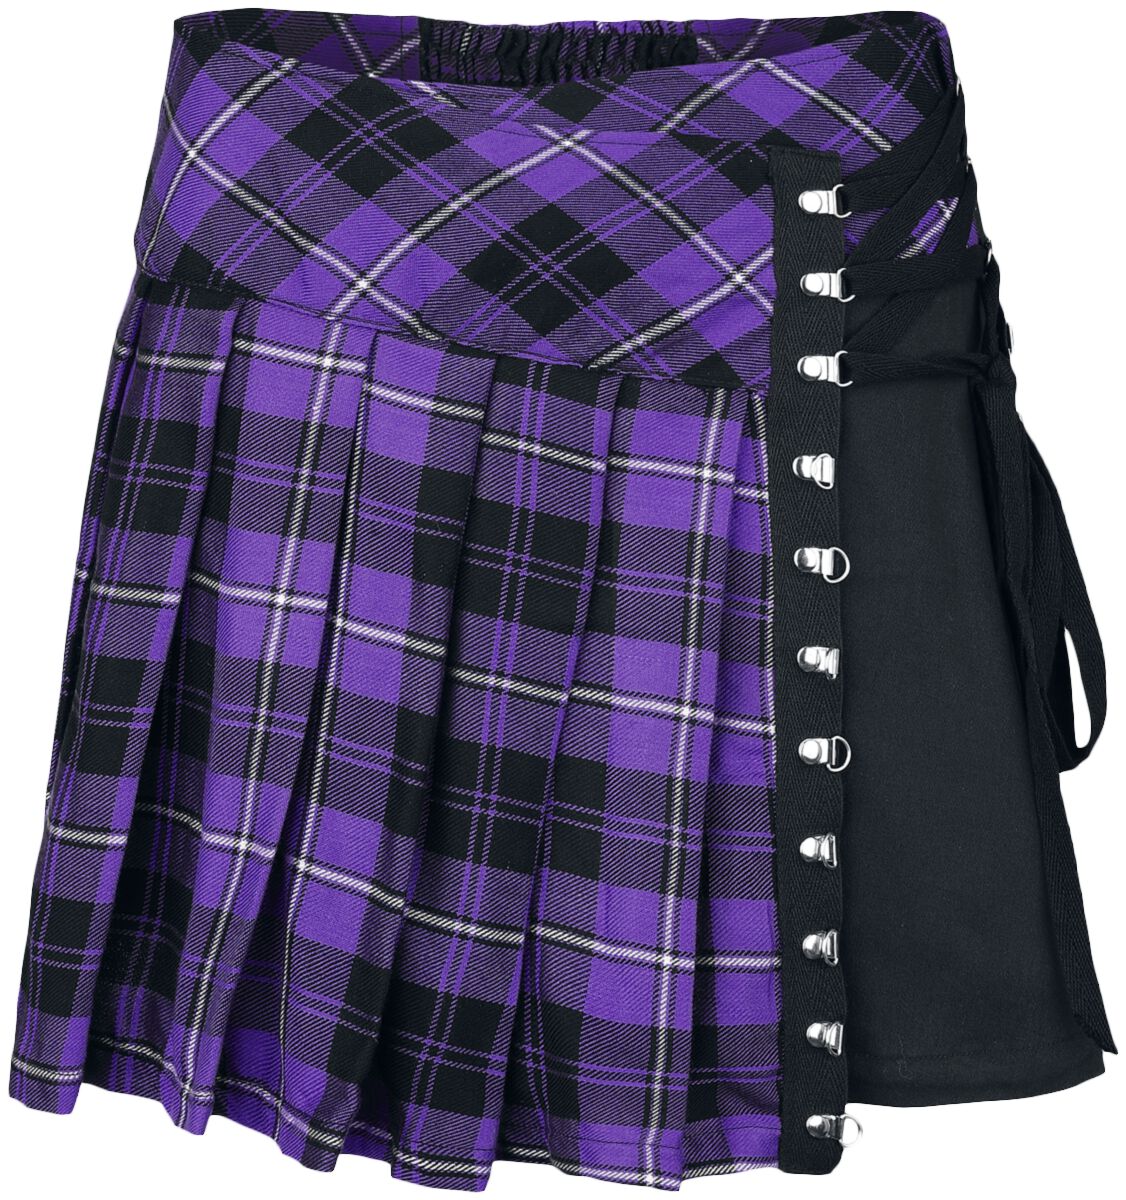 Chemical Black - Gothic Kurzer Rock - Hybrid Skirt - XS bis 4XL - für Damen - Größe M - lila/schwarz